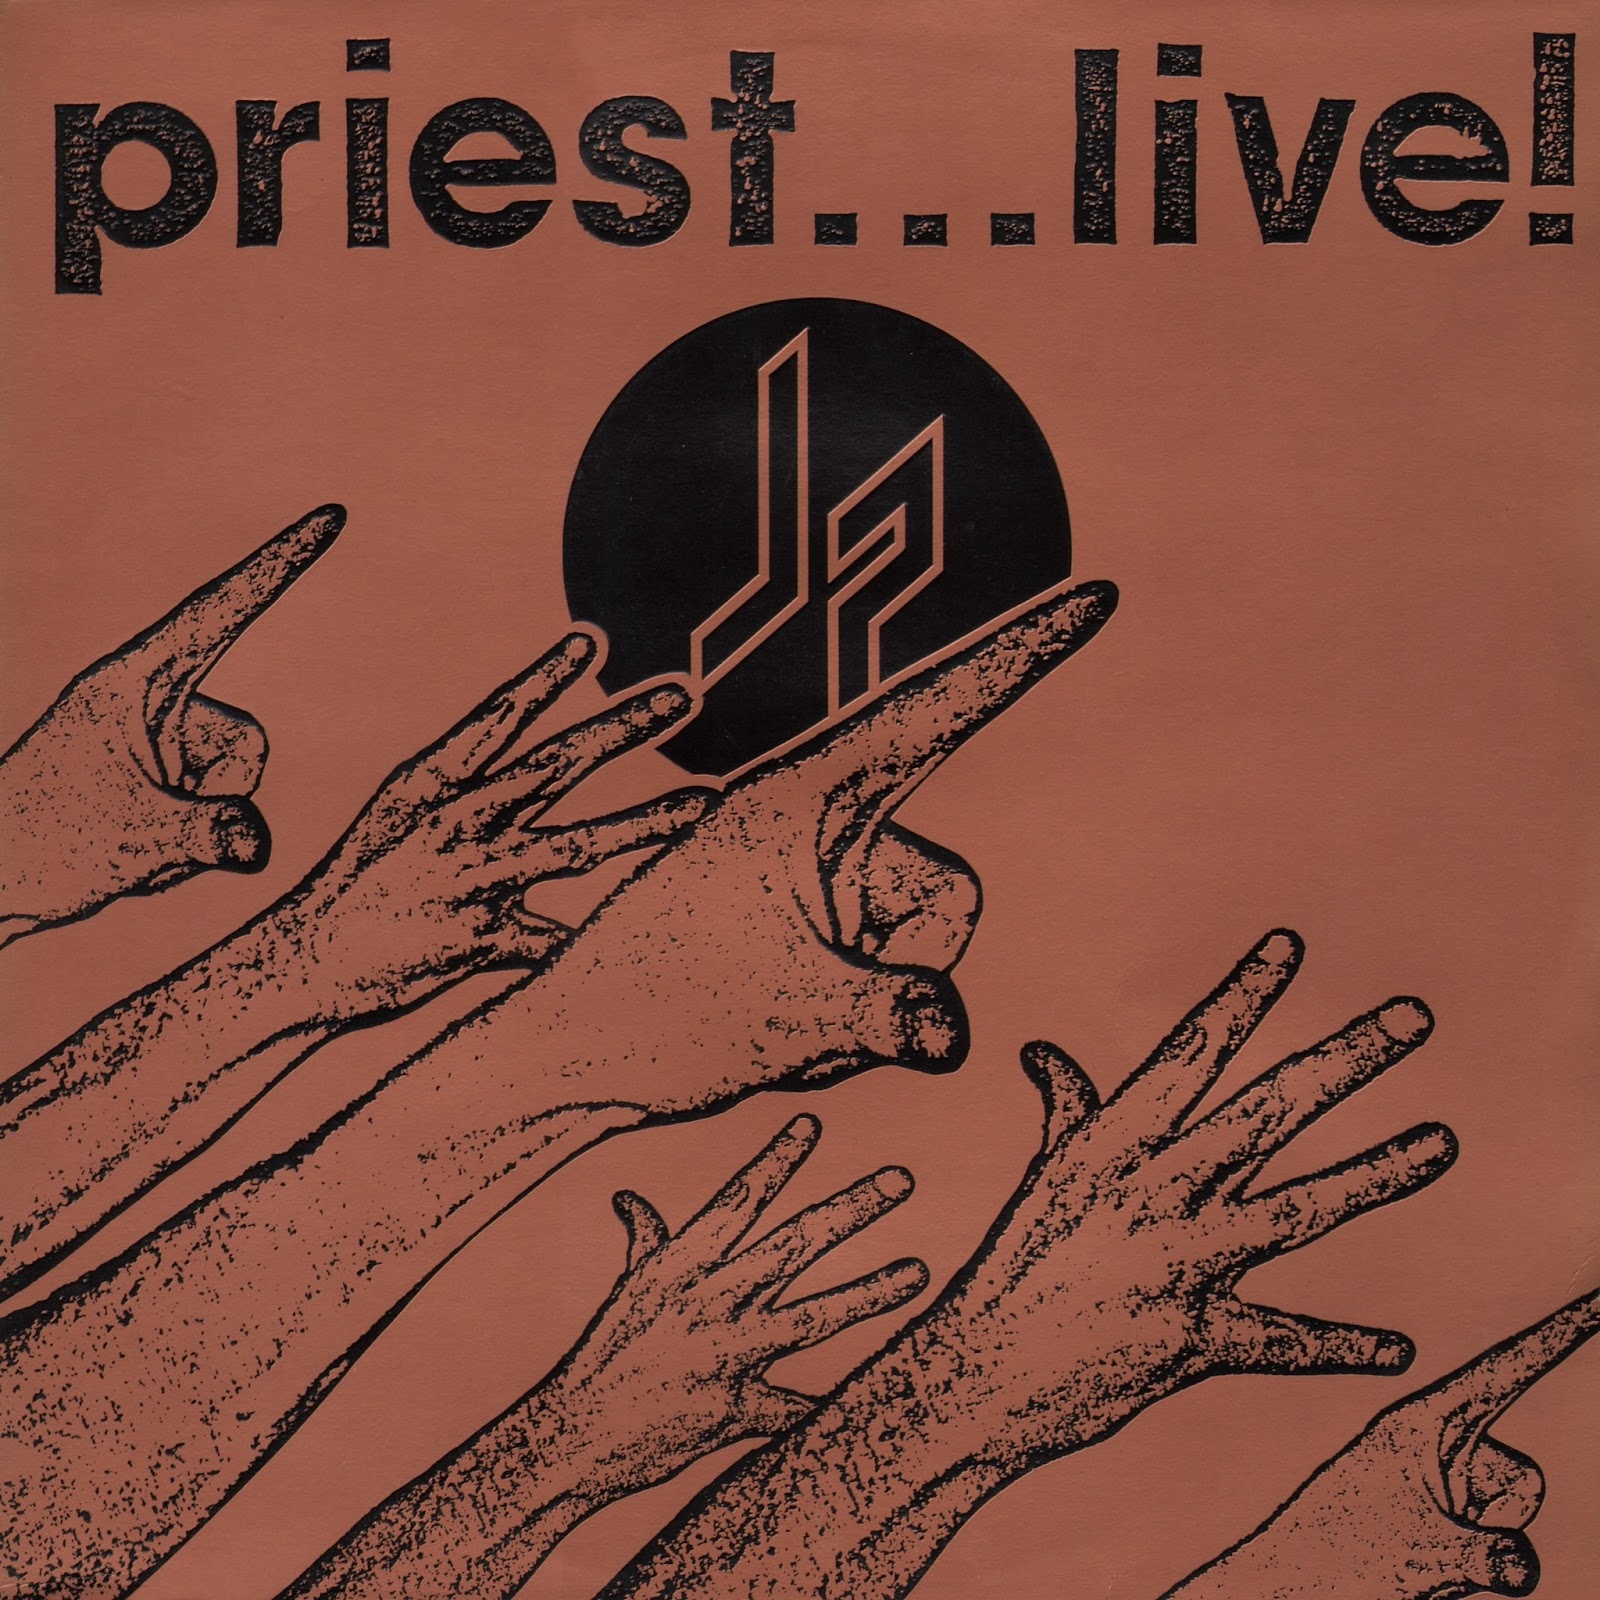 judas priest tour dates 1987